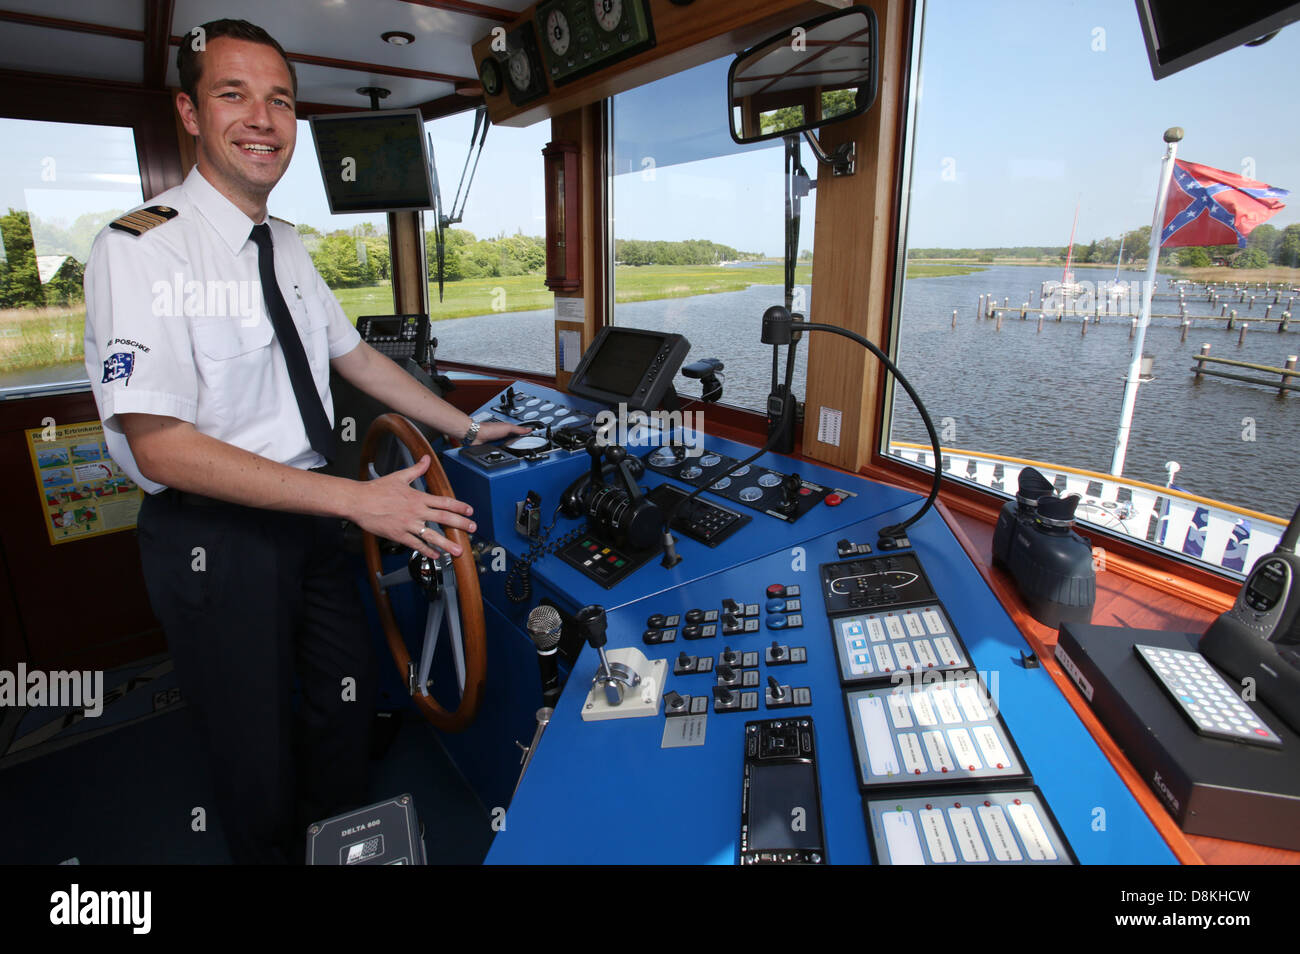 Tassilo Schäfer, Kapitän der Mississippi-Dampfer "River Star" der Reederei  Poschke ist in den Bodden Hafen von Prerow, Deutschland, 30. Mai 2013  abgebildet. 2009 wurde er im Alter von 21 Jahren Deutschlands jüngster